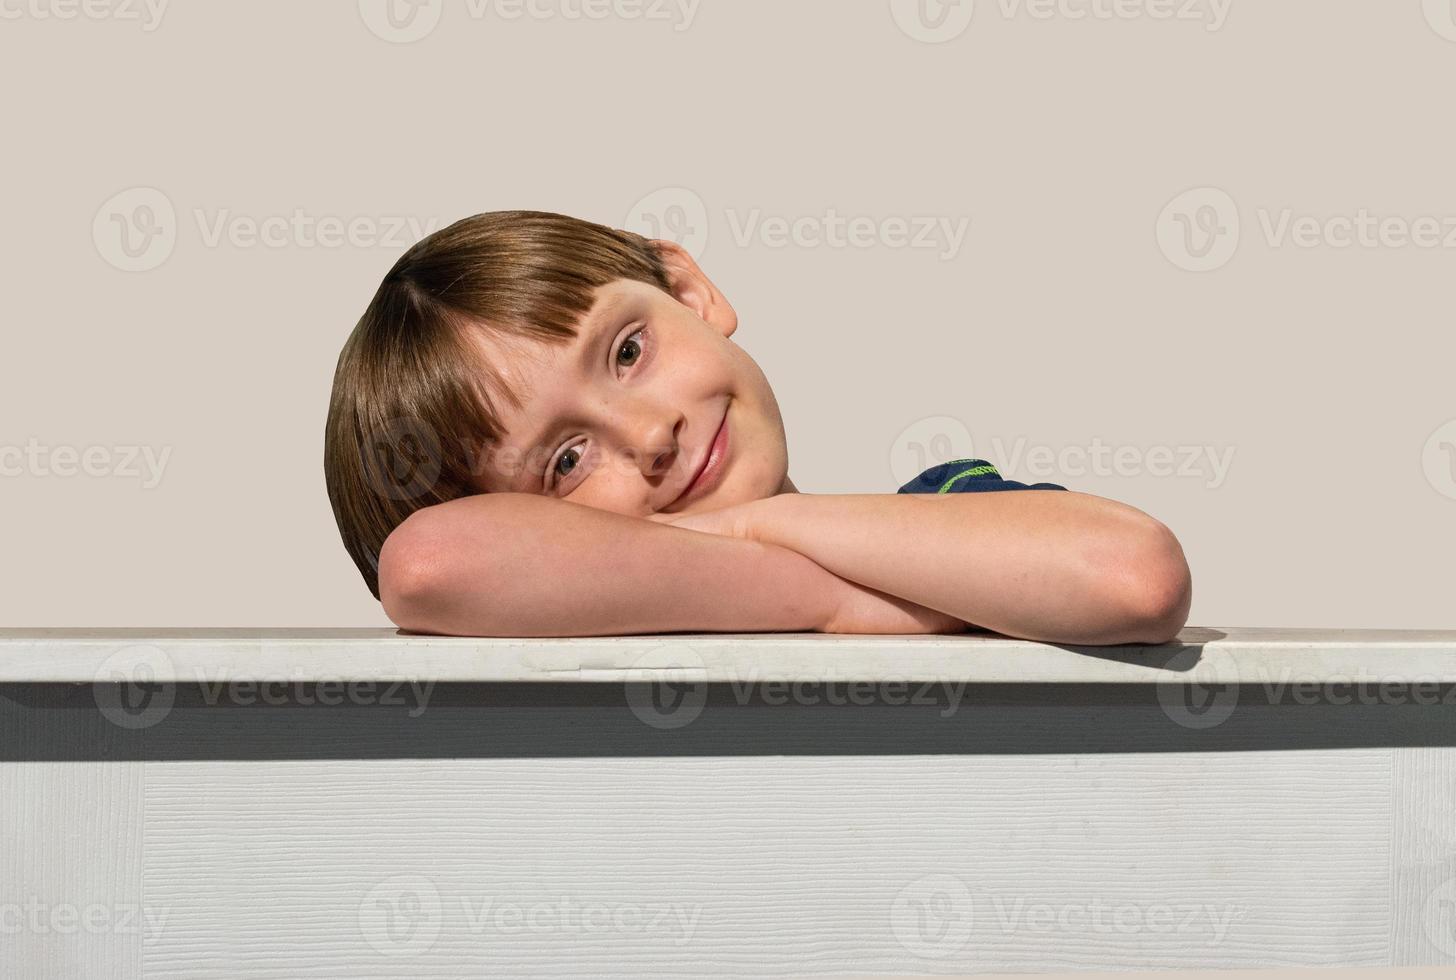 sorridente menino feliz com olhos castanhos na borda do quadro com espaço de cópia foto